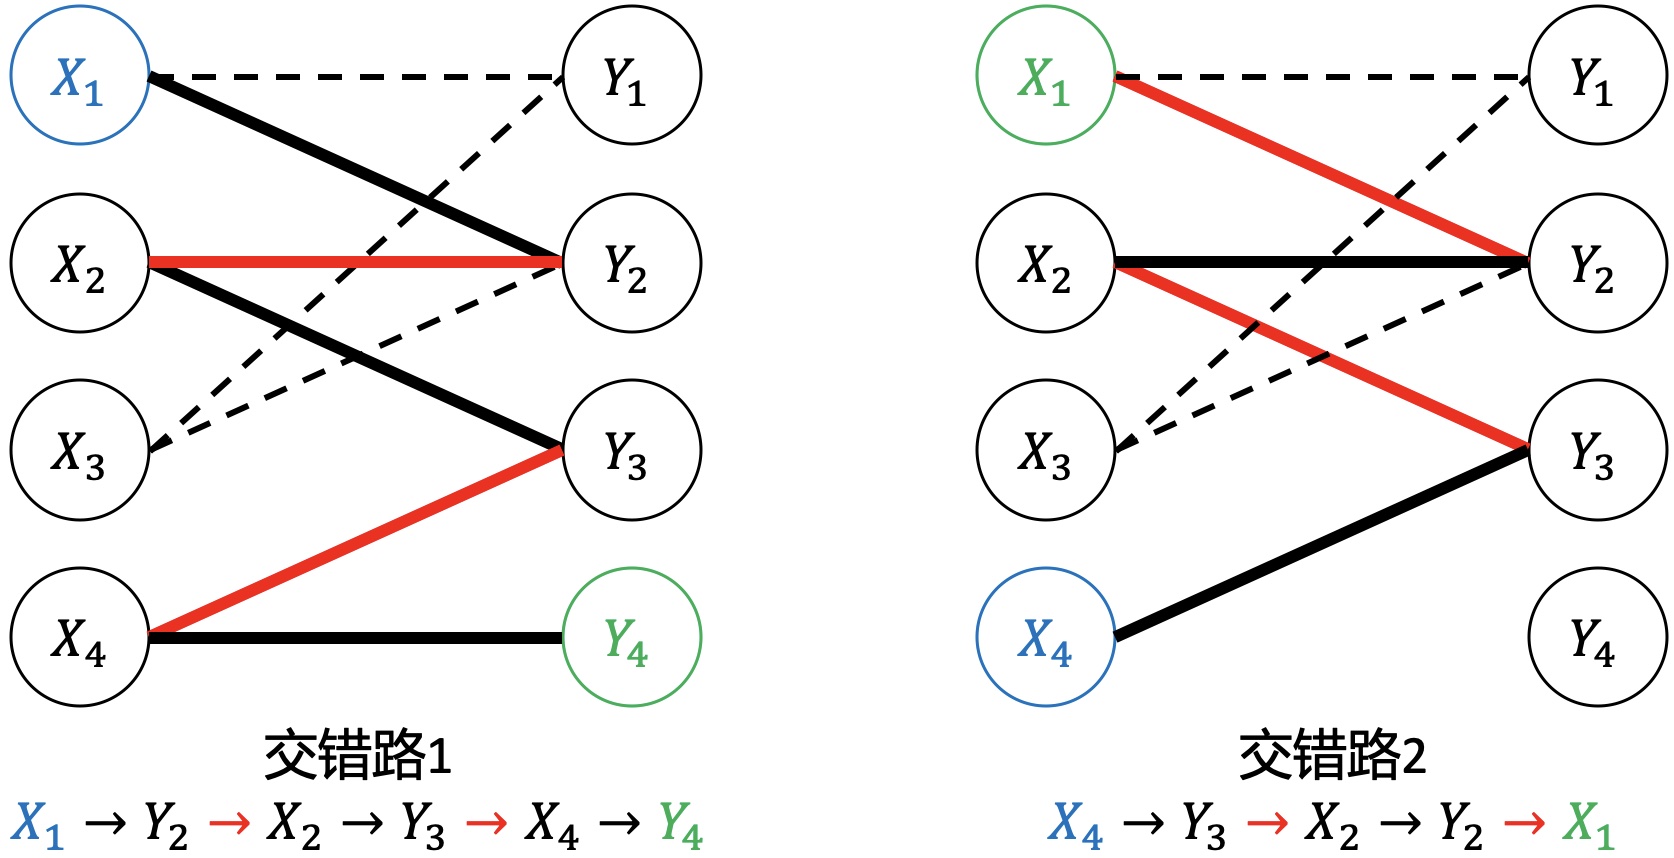 二分图匹配，匈牙利算法原理与实现 - 几何思维